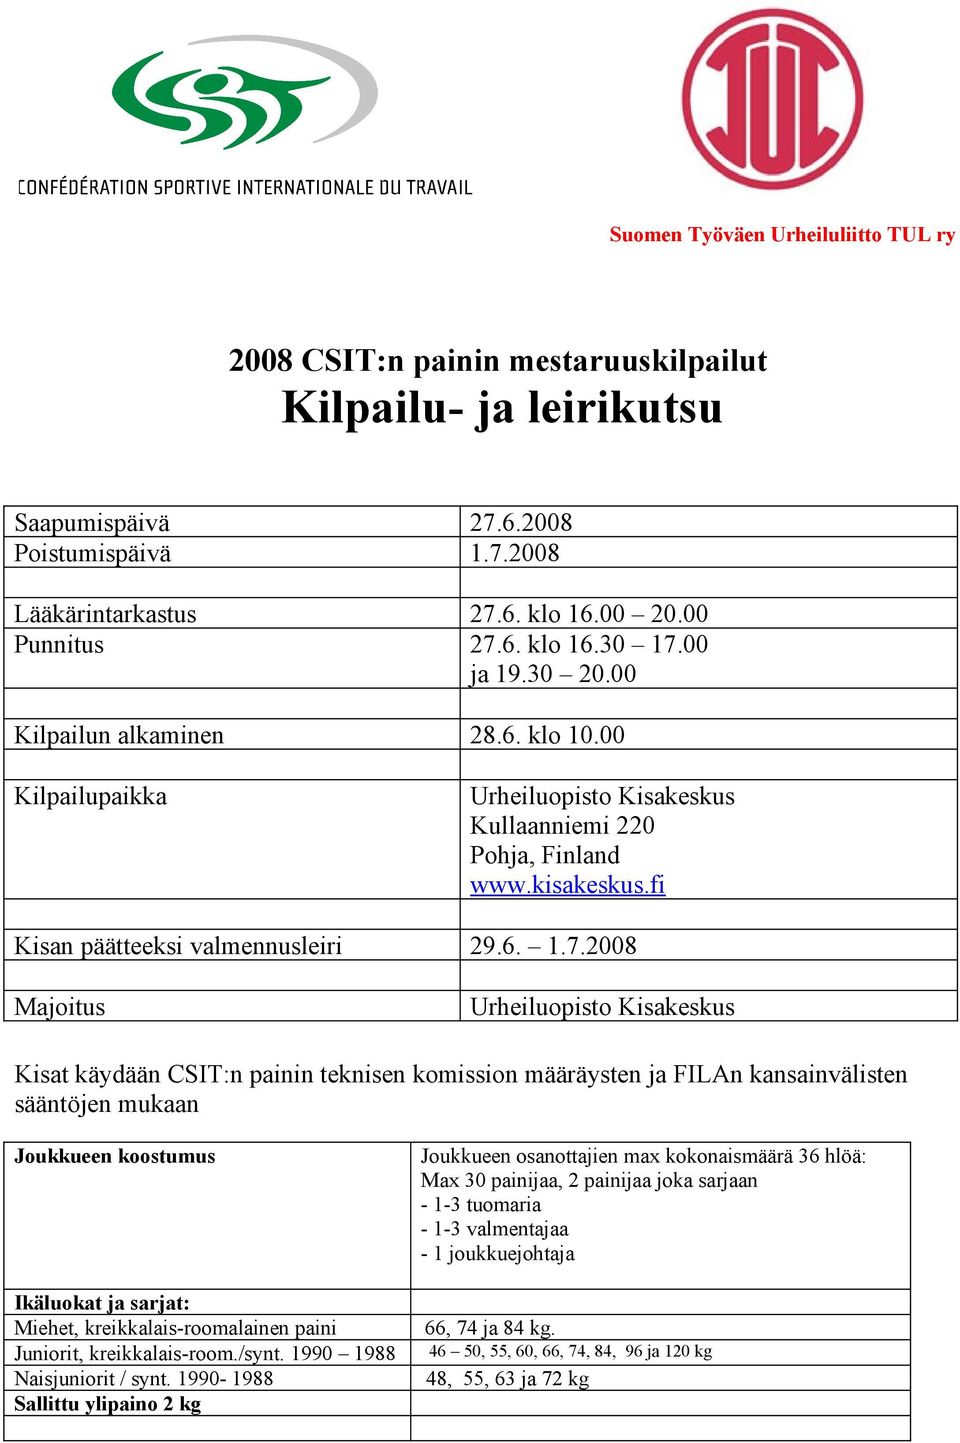 2008 Majoitus Urheiluopisto Kisakeskus Kisat käydään CSIT:n painin teknisen komission määräysten ja FILAn kansainvälisten sääntöjen mukaan Joukkueen koostumus Ikäluokat ja sarjat: Miehet,